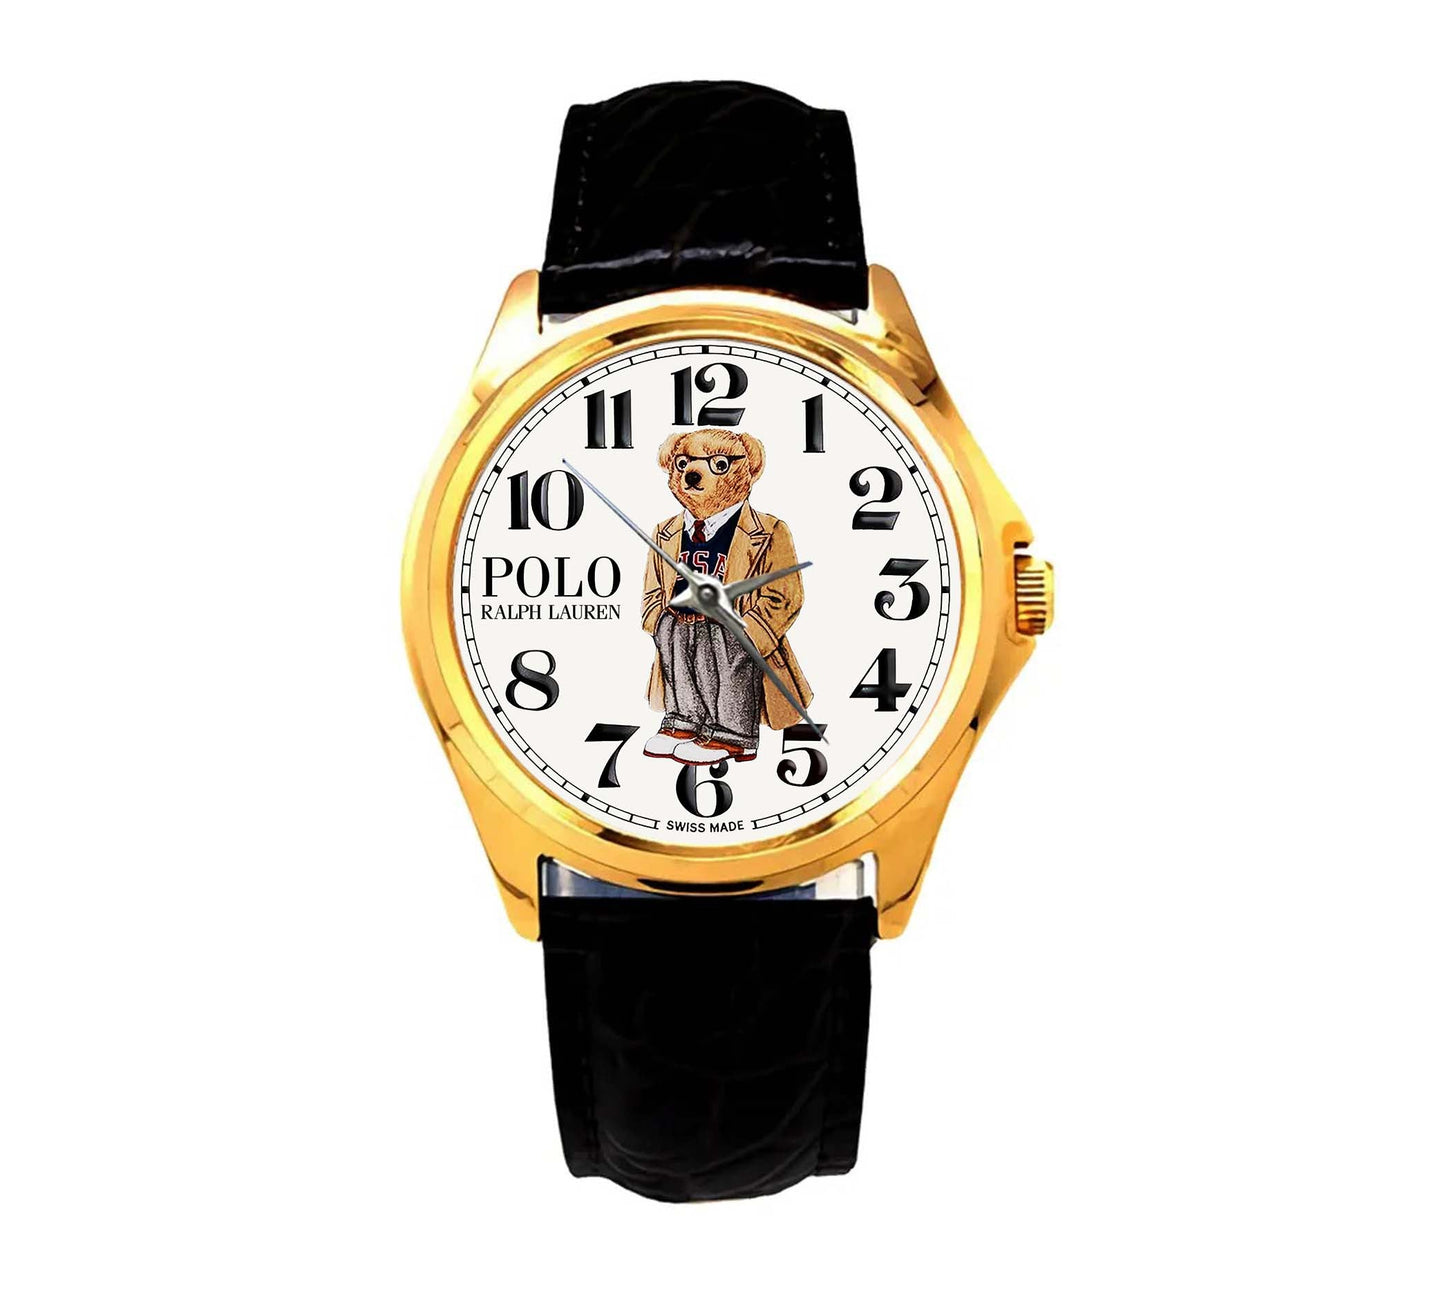 Polo bear Ralph Lauren Watch AS142